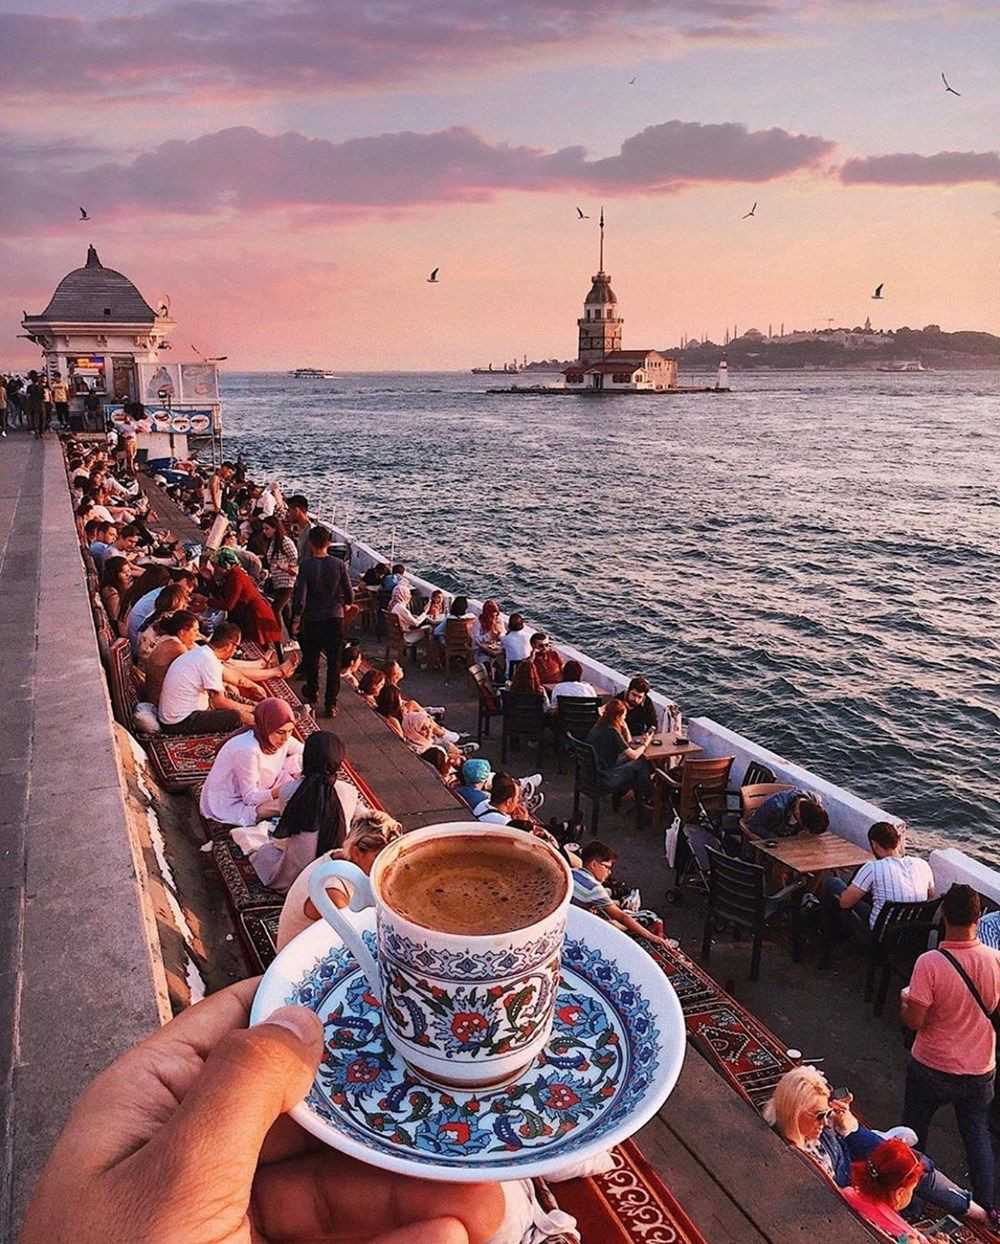 İstanbul,oneistanbul etiketiyle Instagram üstünden dünyaya tanıtılıyor - Sayfa 4